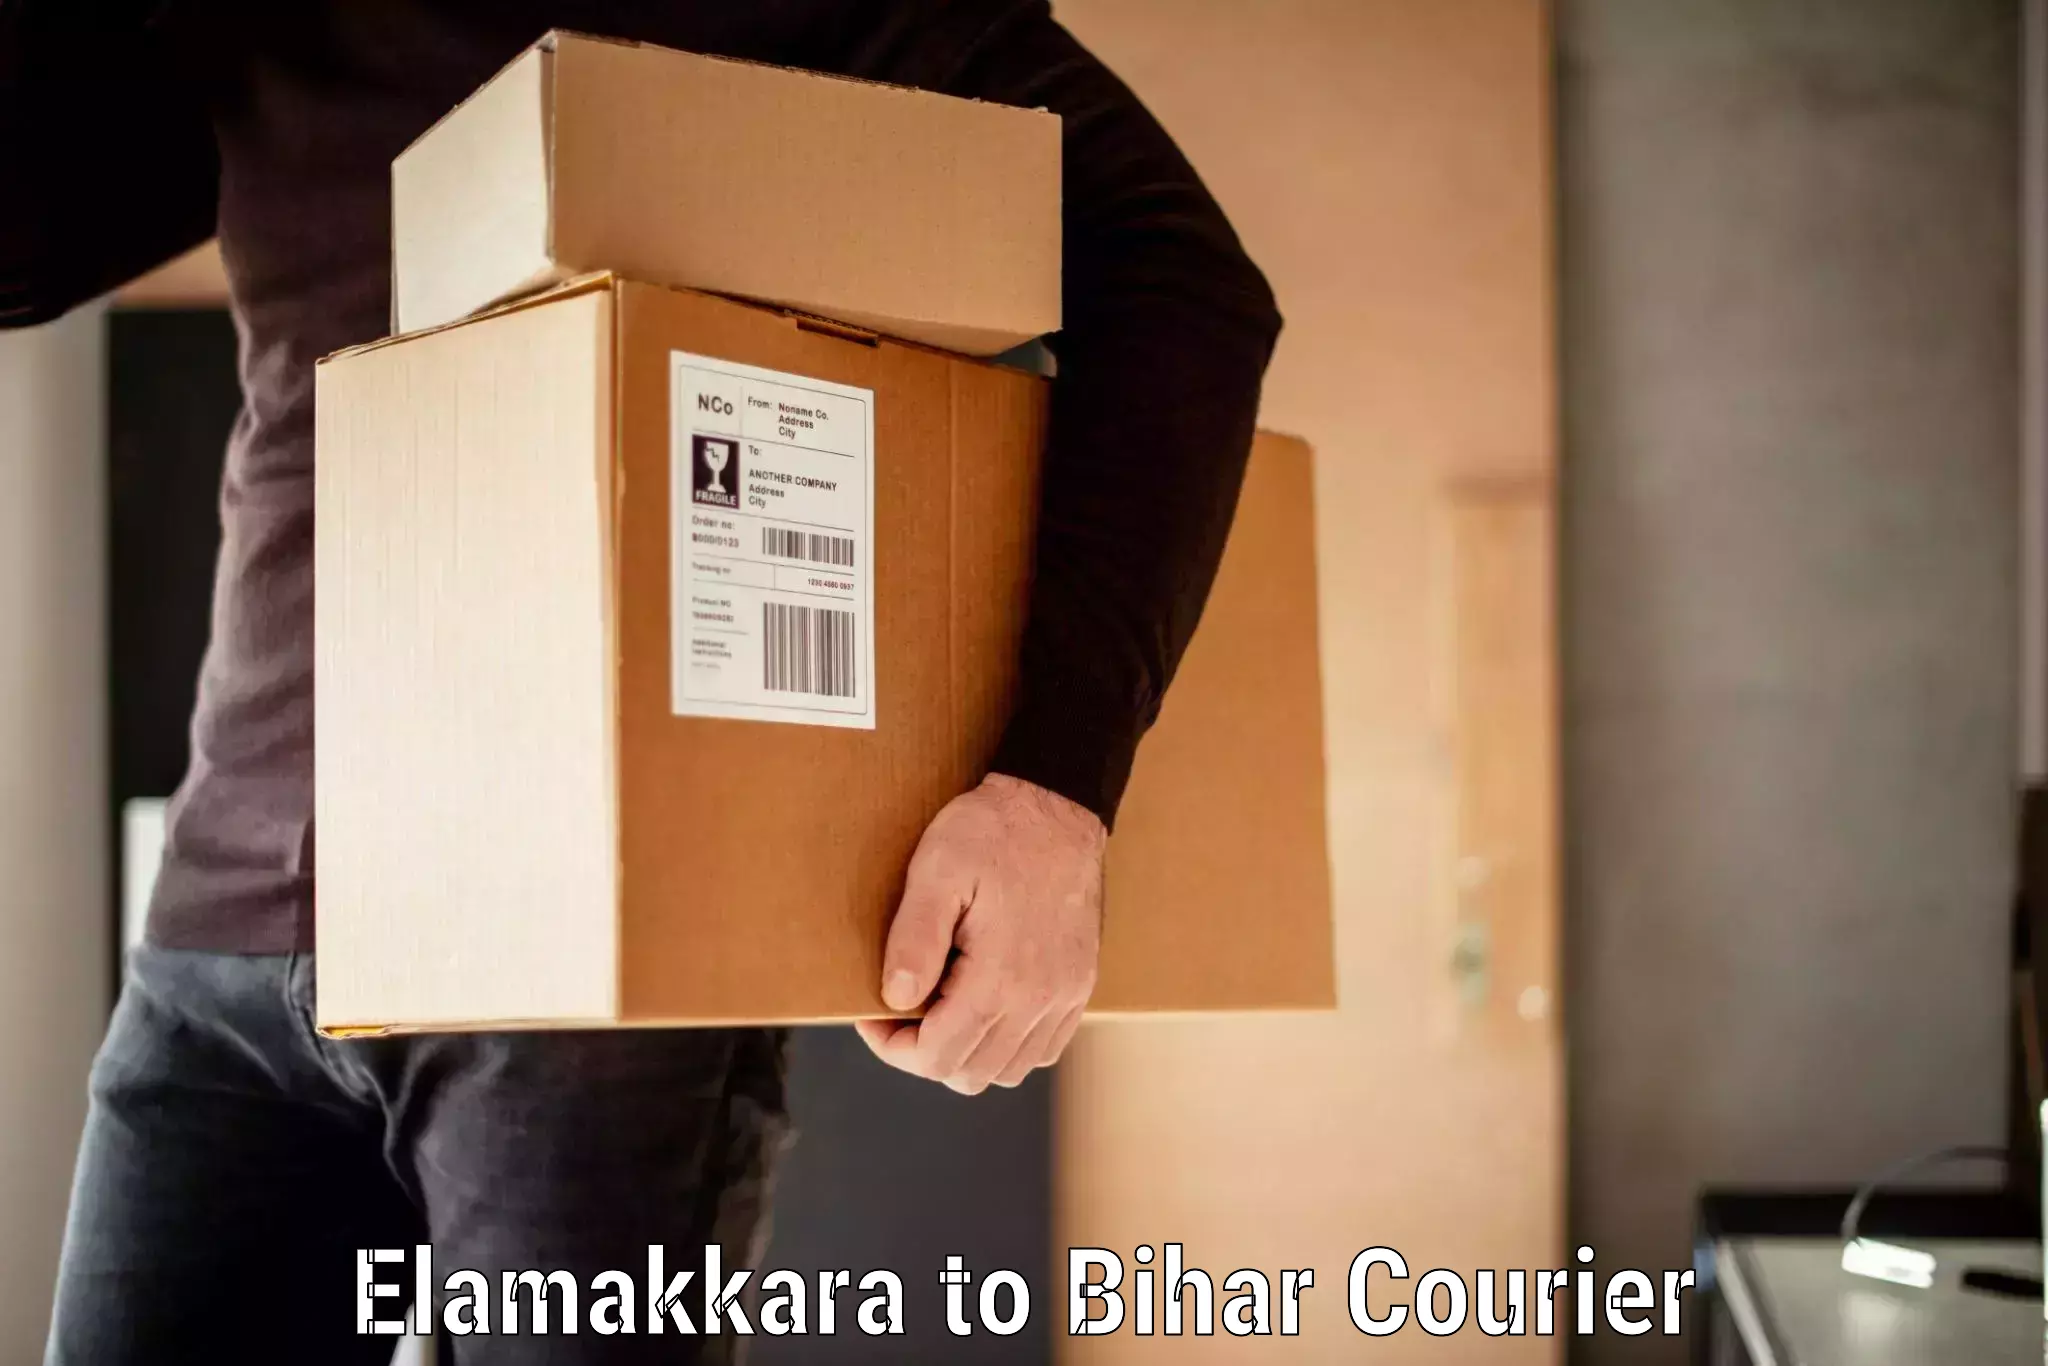 Personal effects shipping in Elamakkara to Dhaka